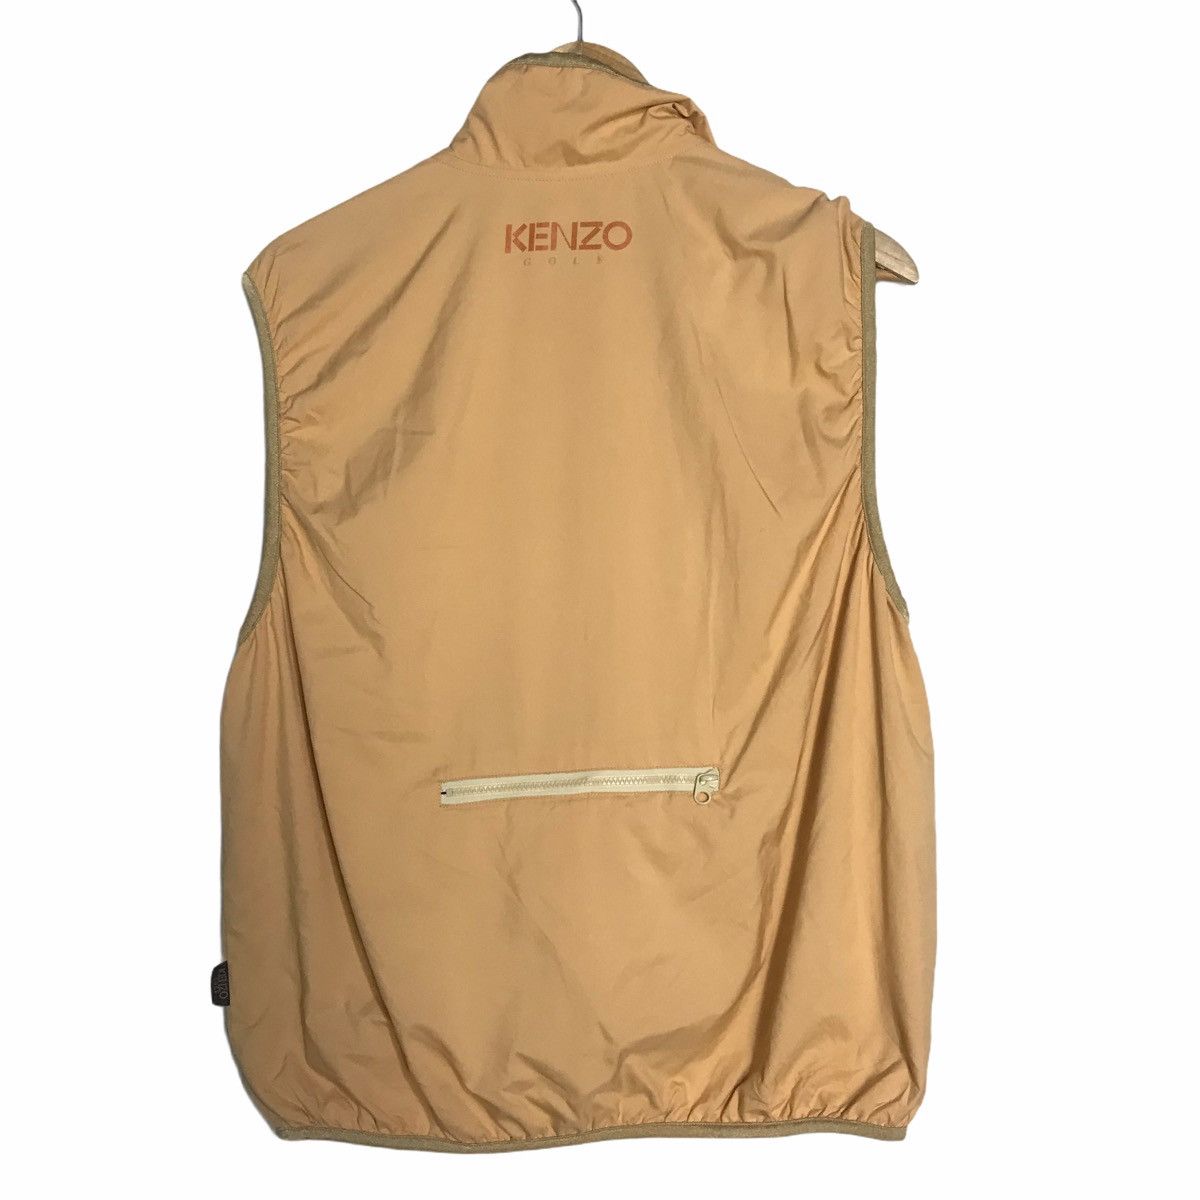 Kenzo golf nylon vest jacket medium size - 2